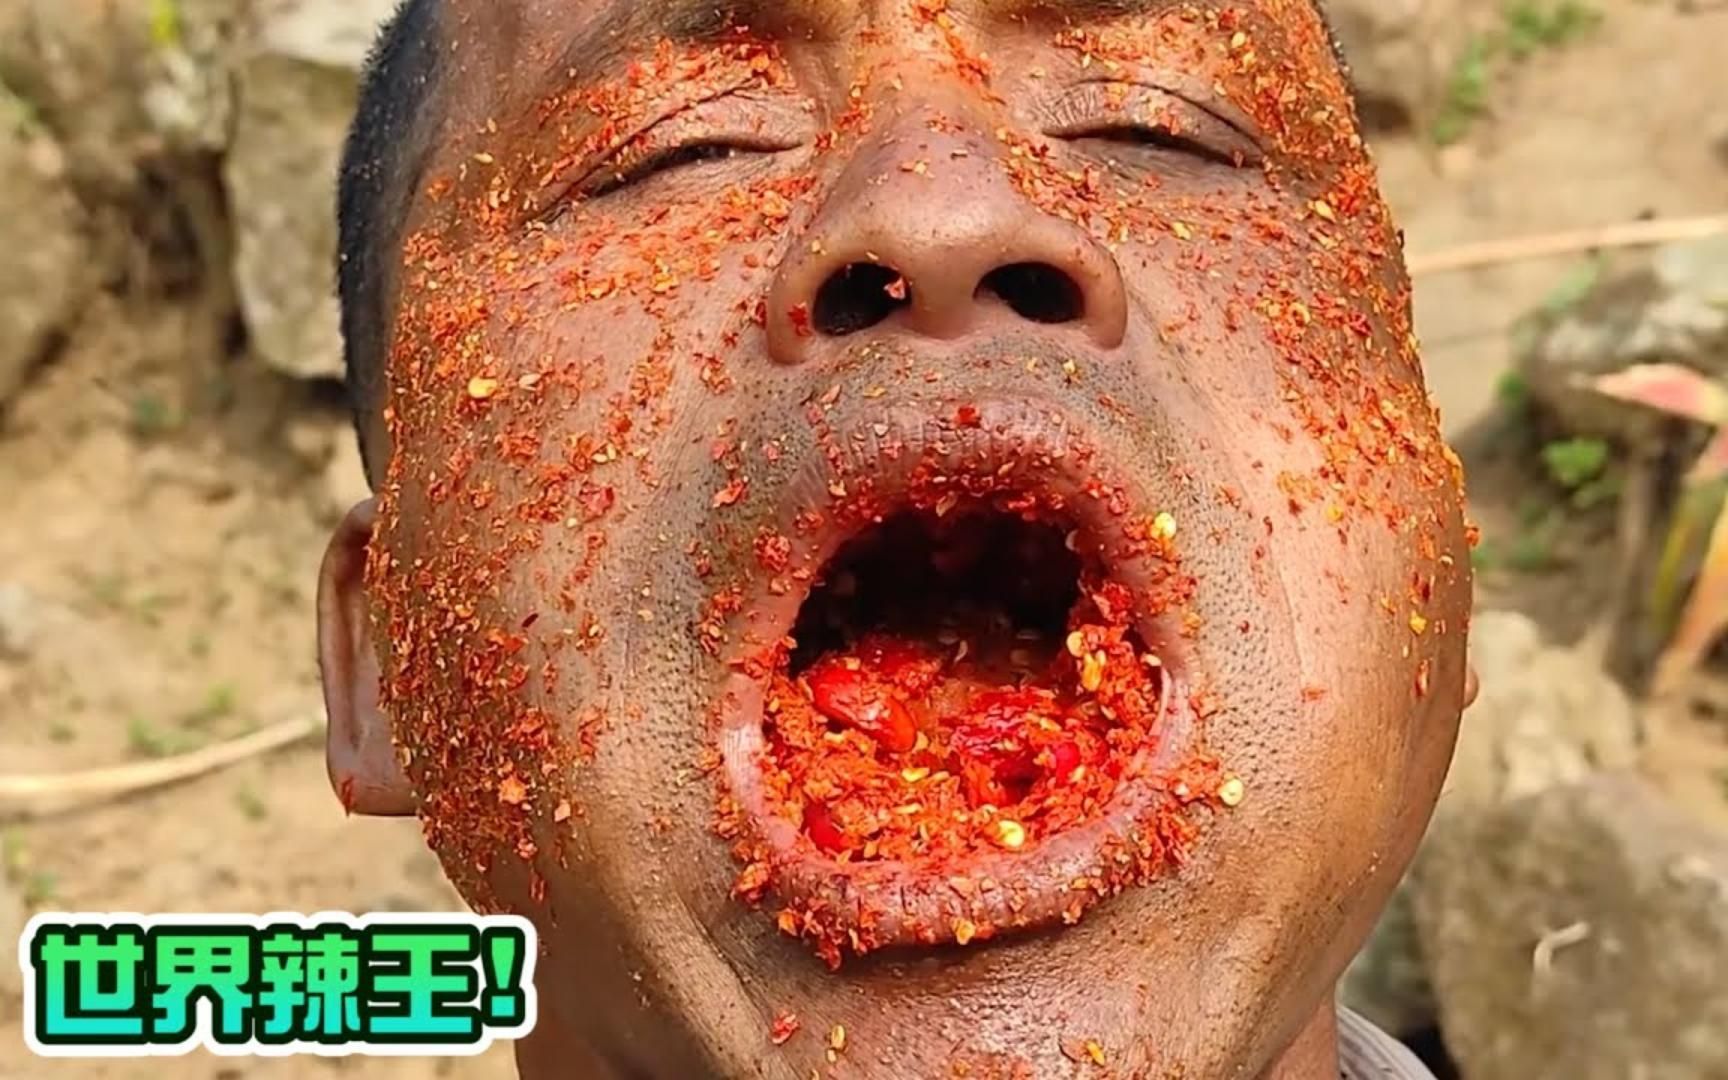 世界上最能吃辣的人！还把辣椒当面膜涂脸上！你敢这么吃吗？